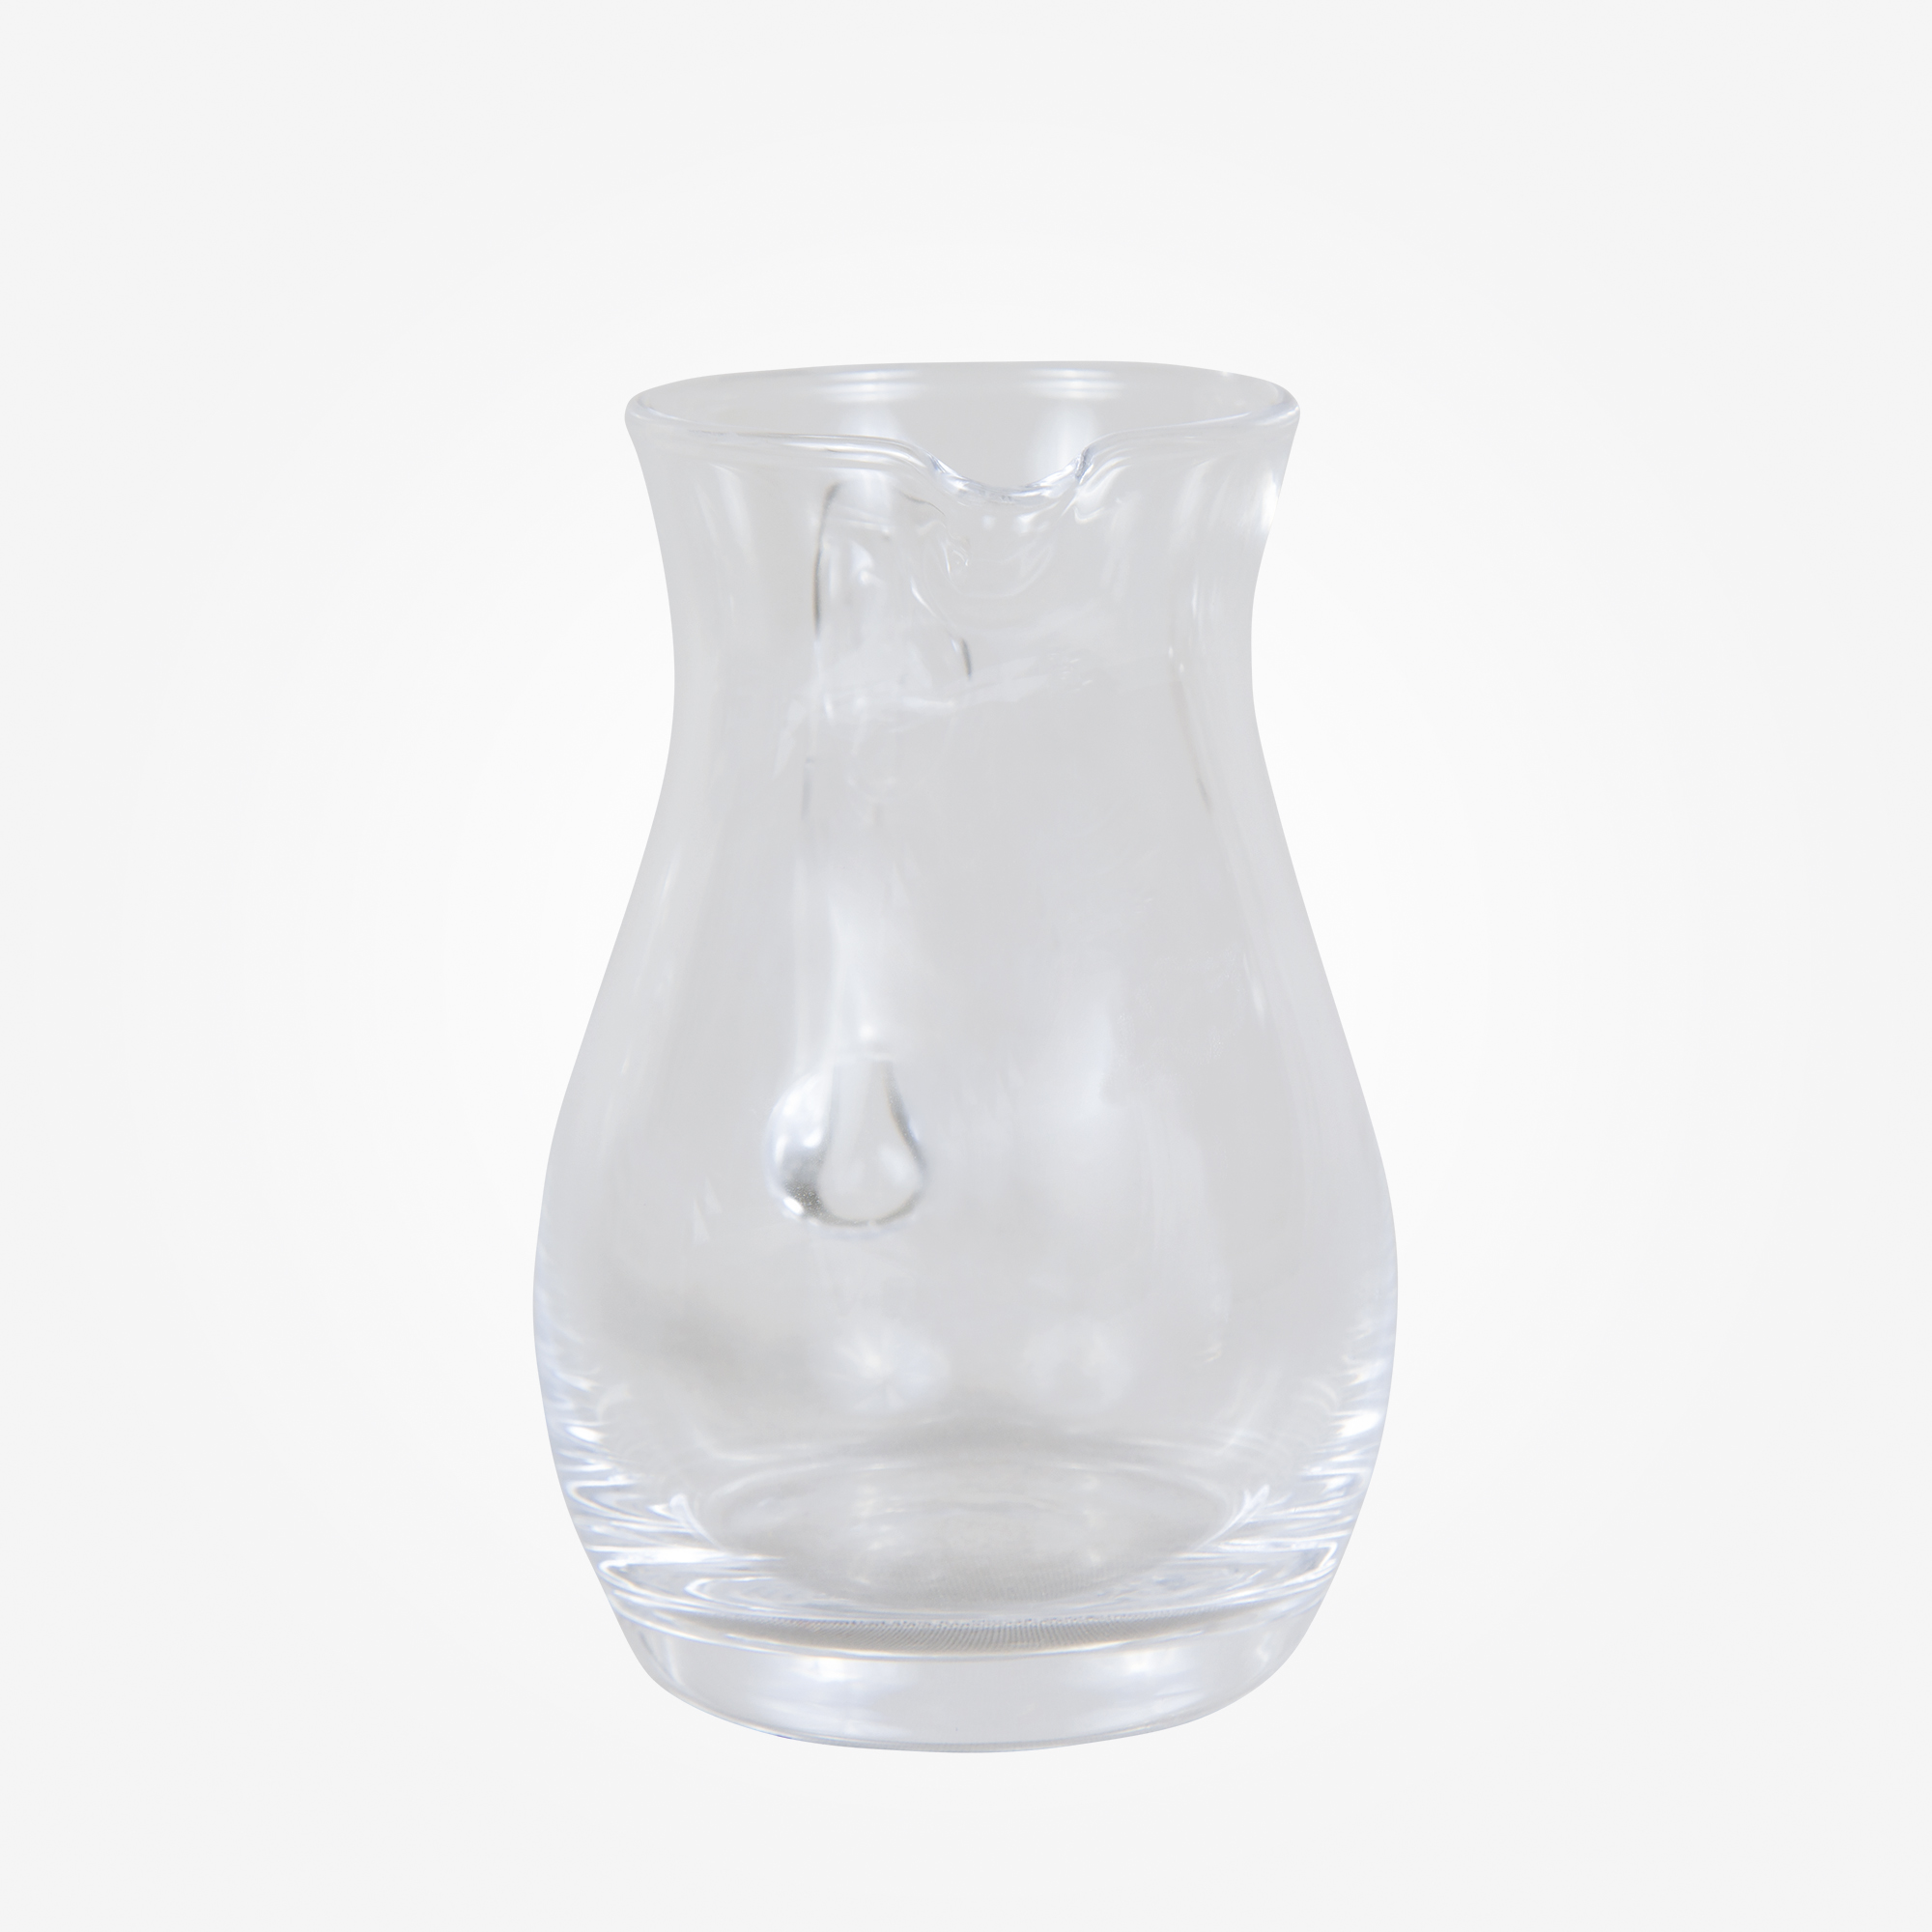 Messweinglas 125, schlicht, ohne Schliff, bauchig, 125ml